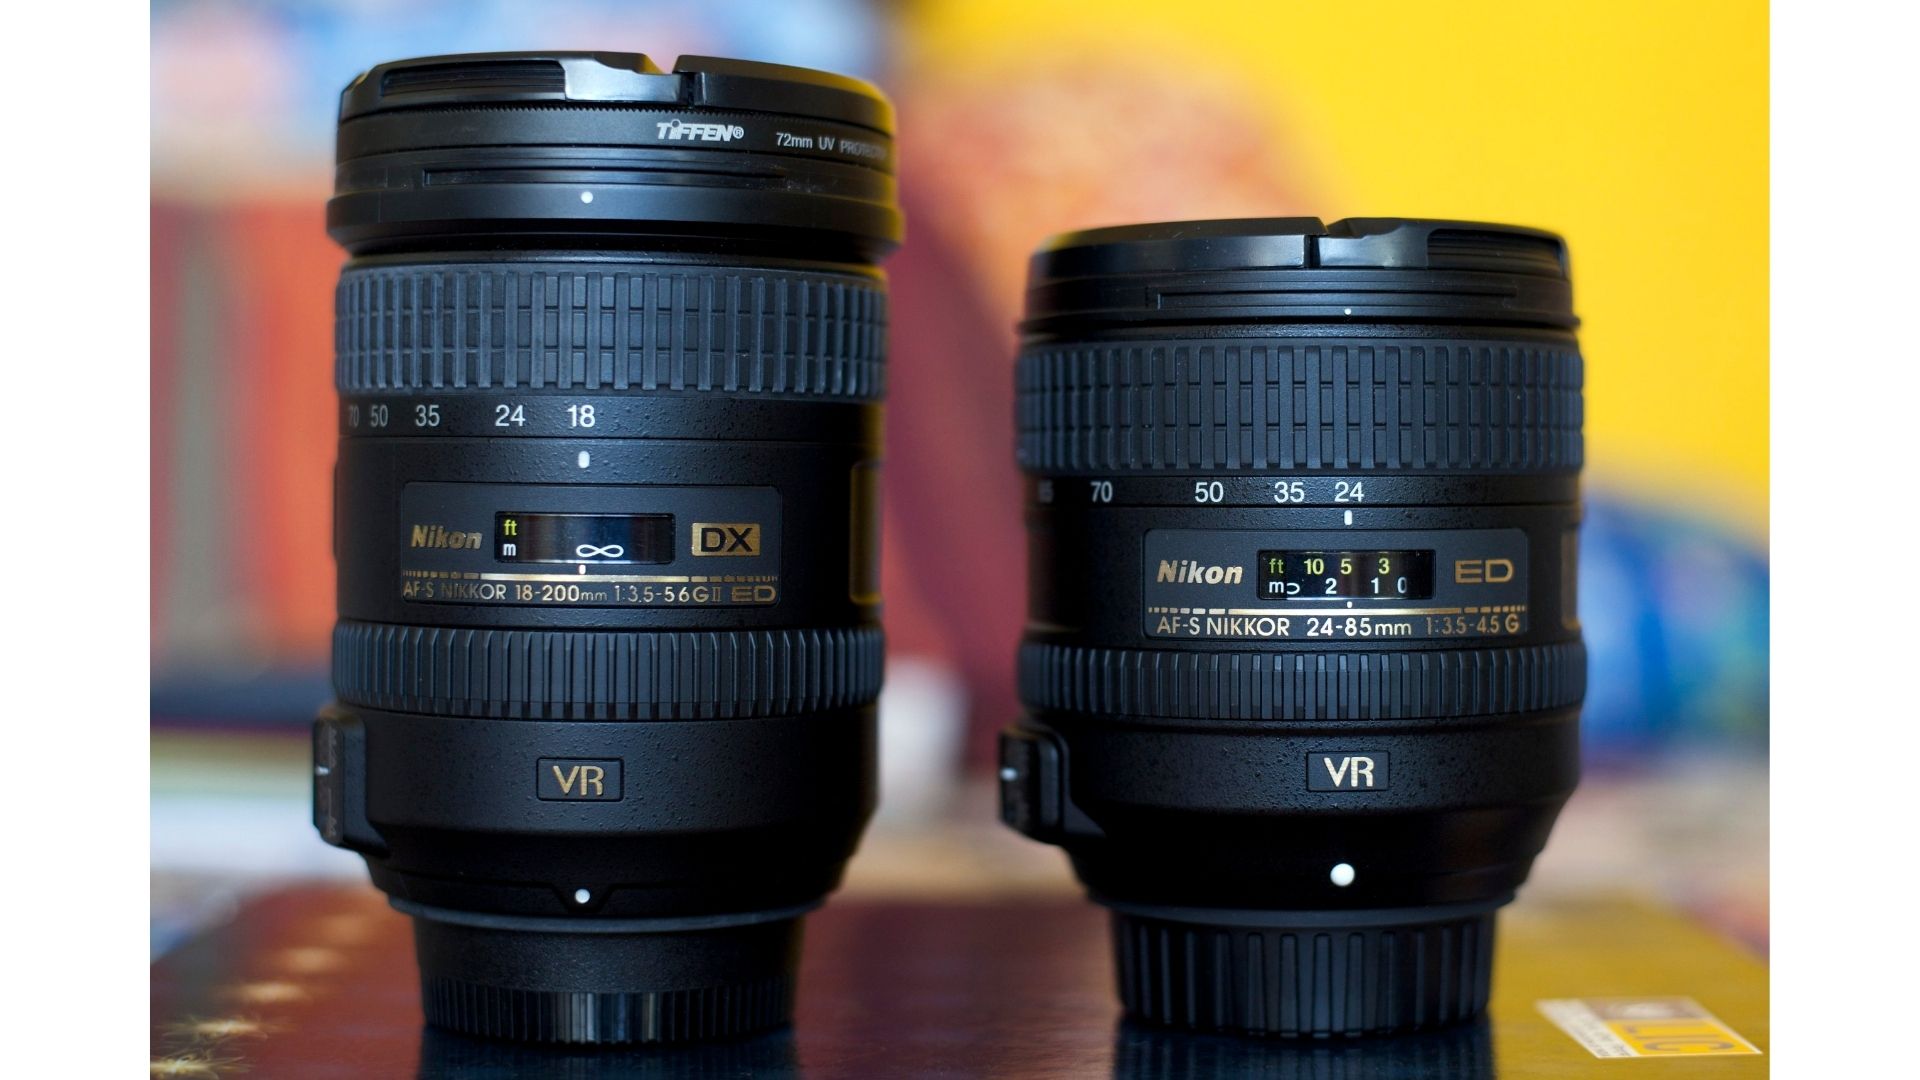 Floreren behang de jouwe FX vs DX lenses - 8 Top Differences Between FX and DX lenses - Camera  analyzer